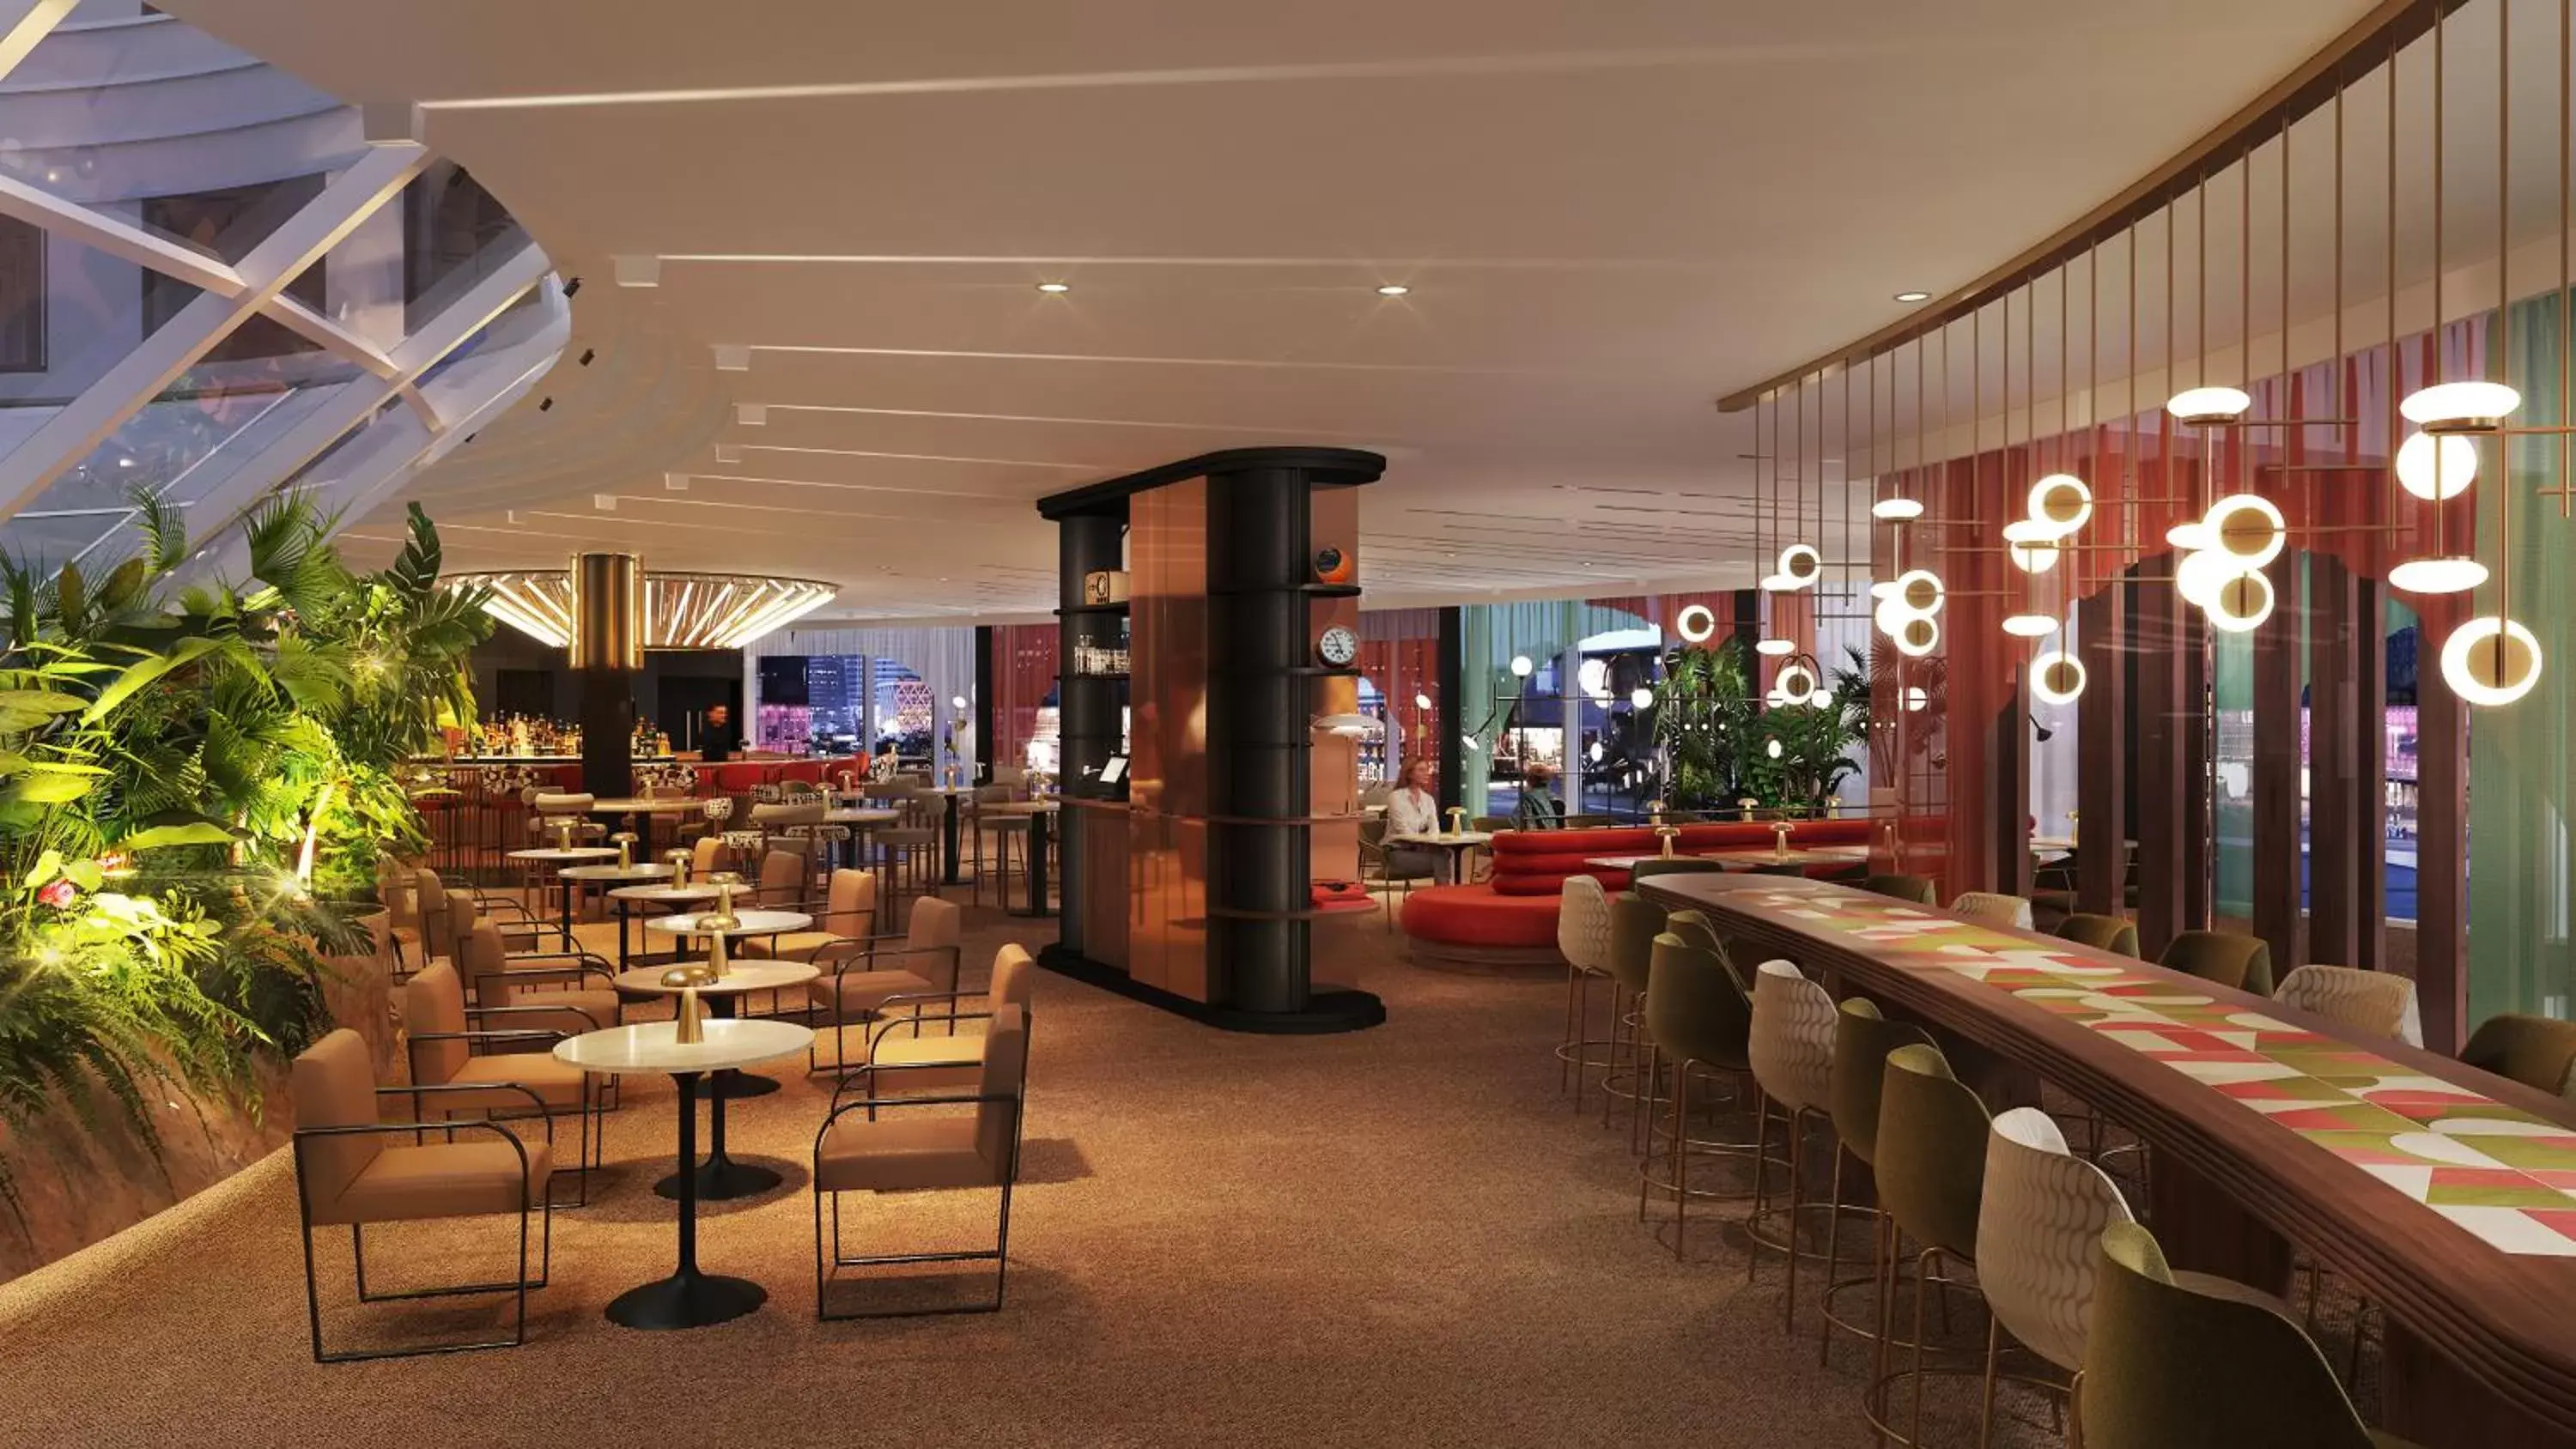 Restaurant/places to eat, Lounge/Bar in Hilton Paris La Défense